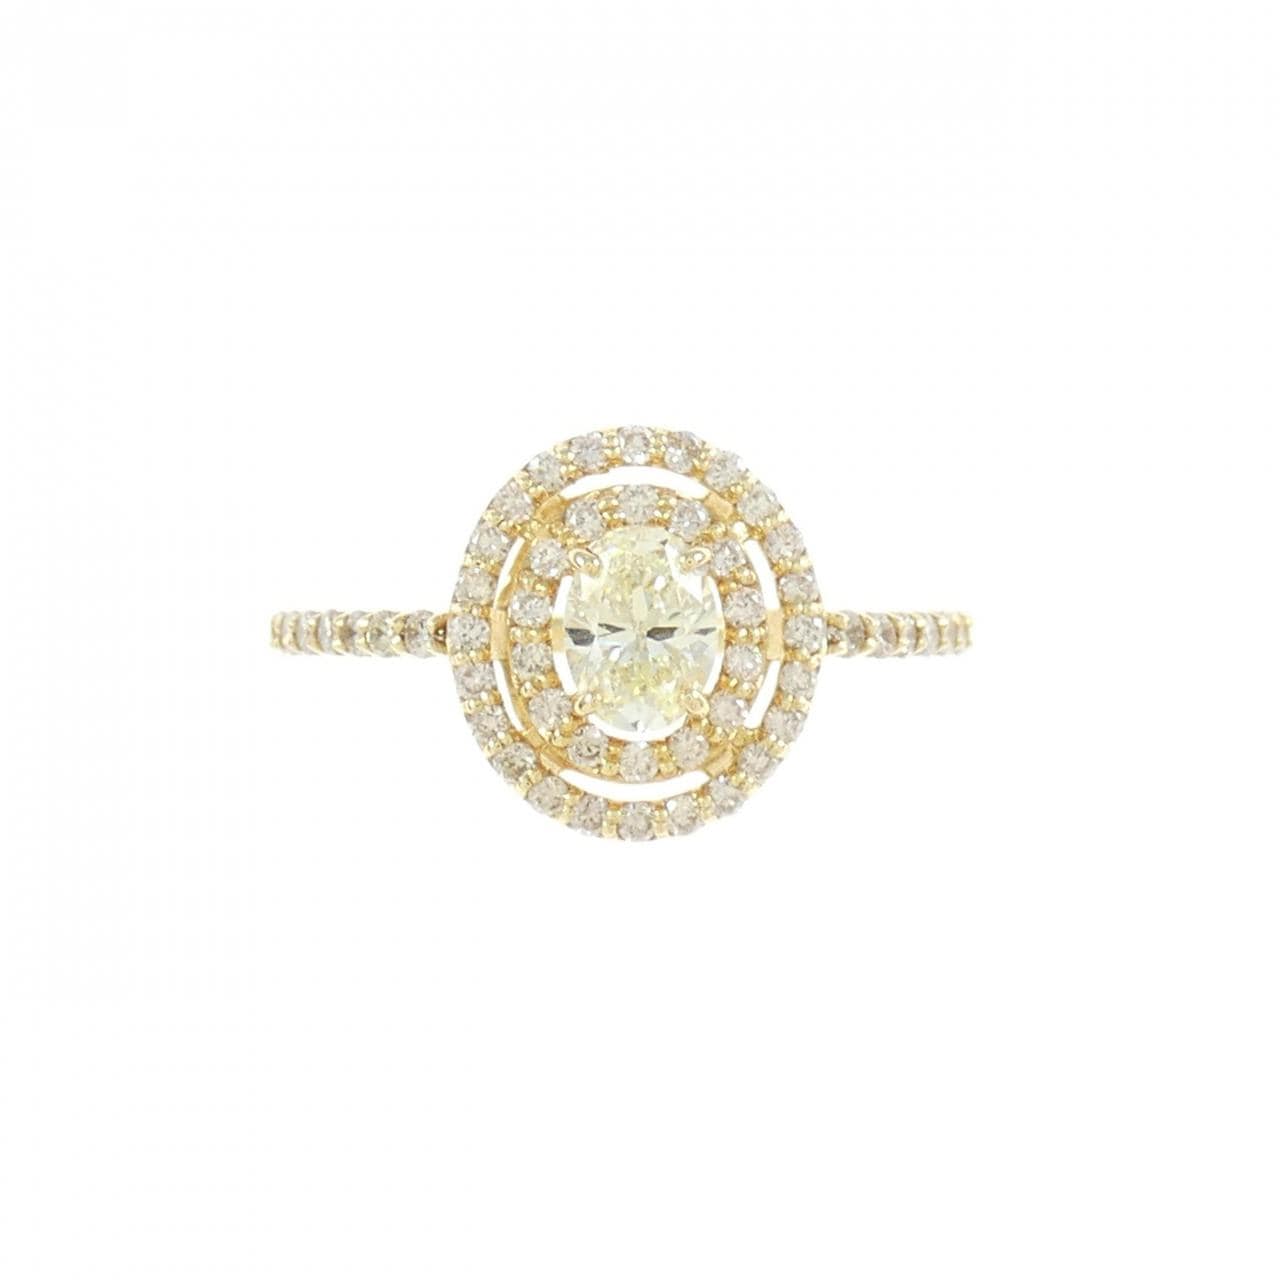 [BRAND NEW] K18YG Diamond ring 0.331CT M VVS2 oval cut